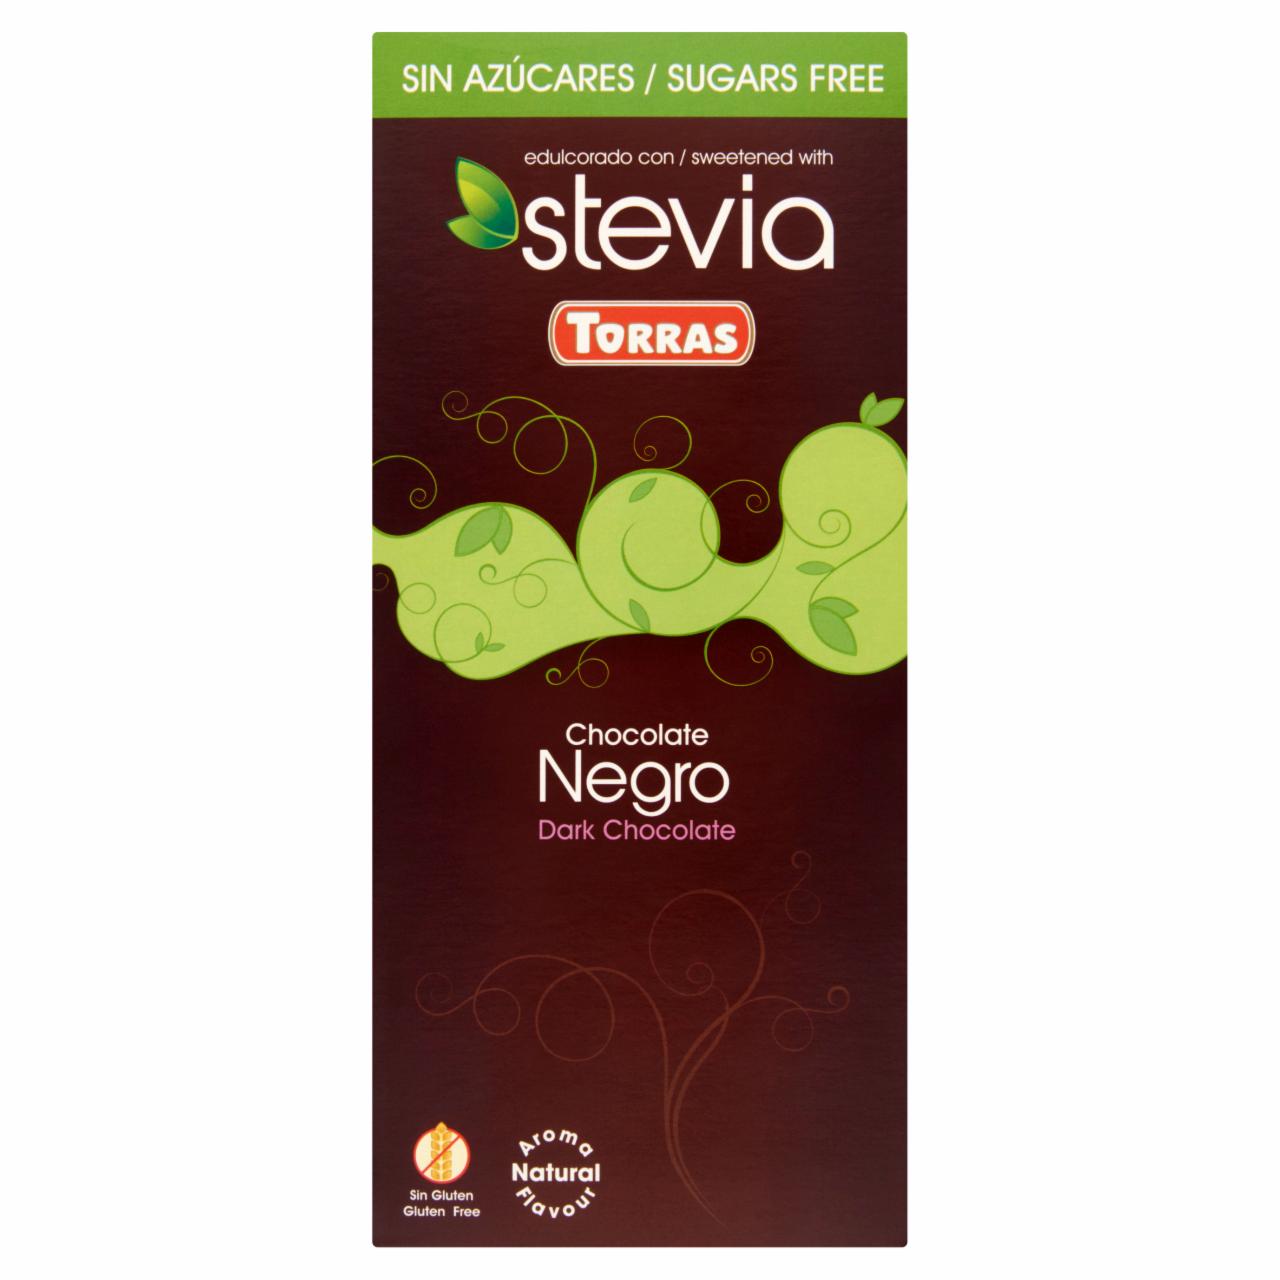 Fotografie - Chocolate Negro stevia 60% cacao